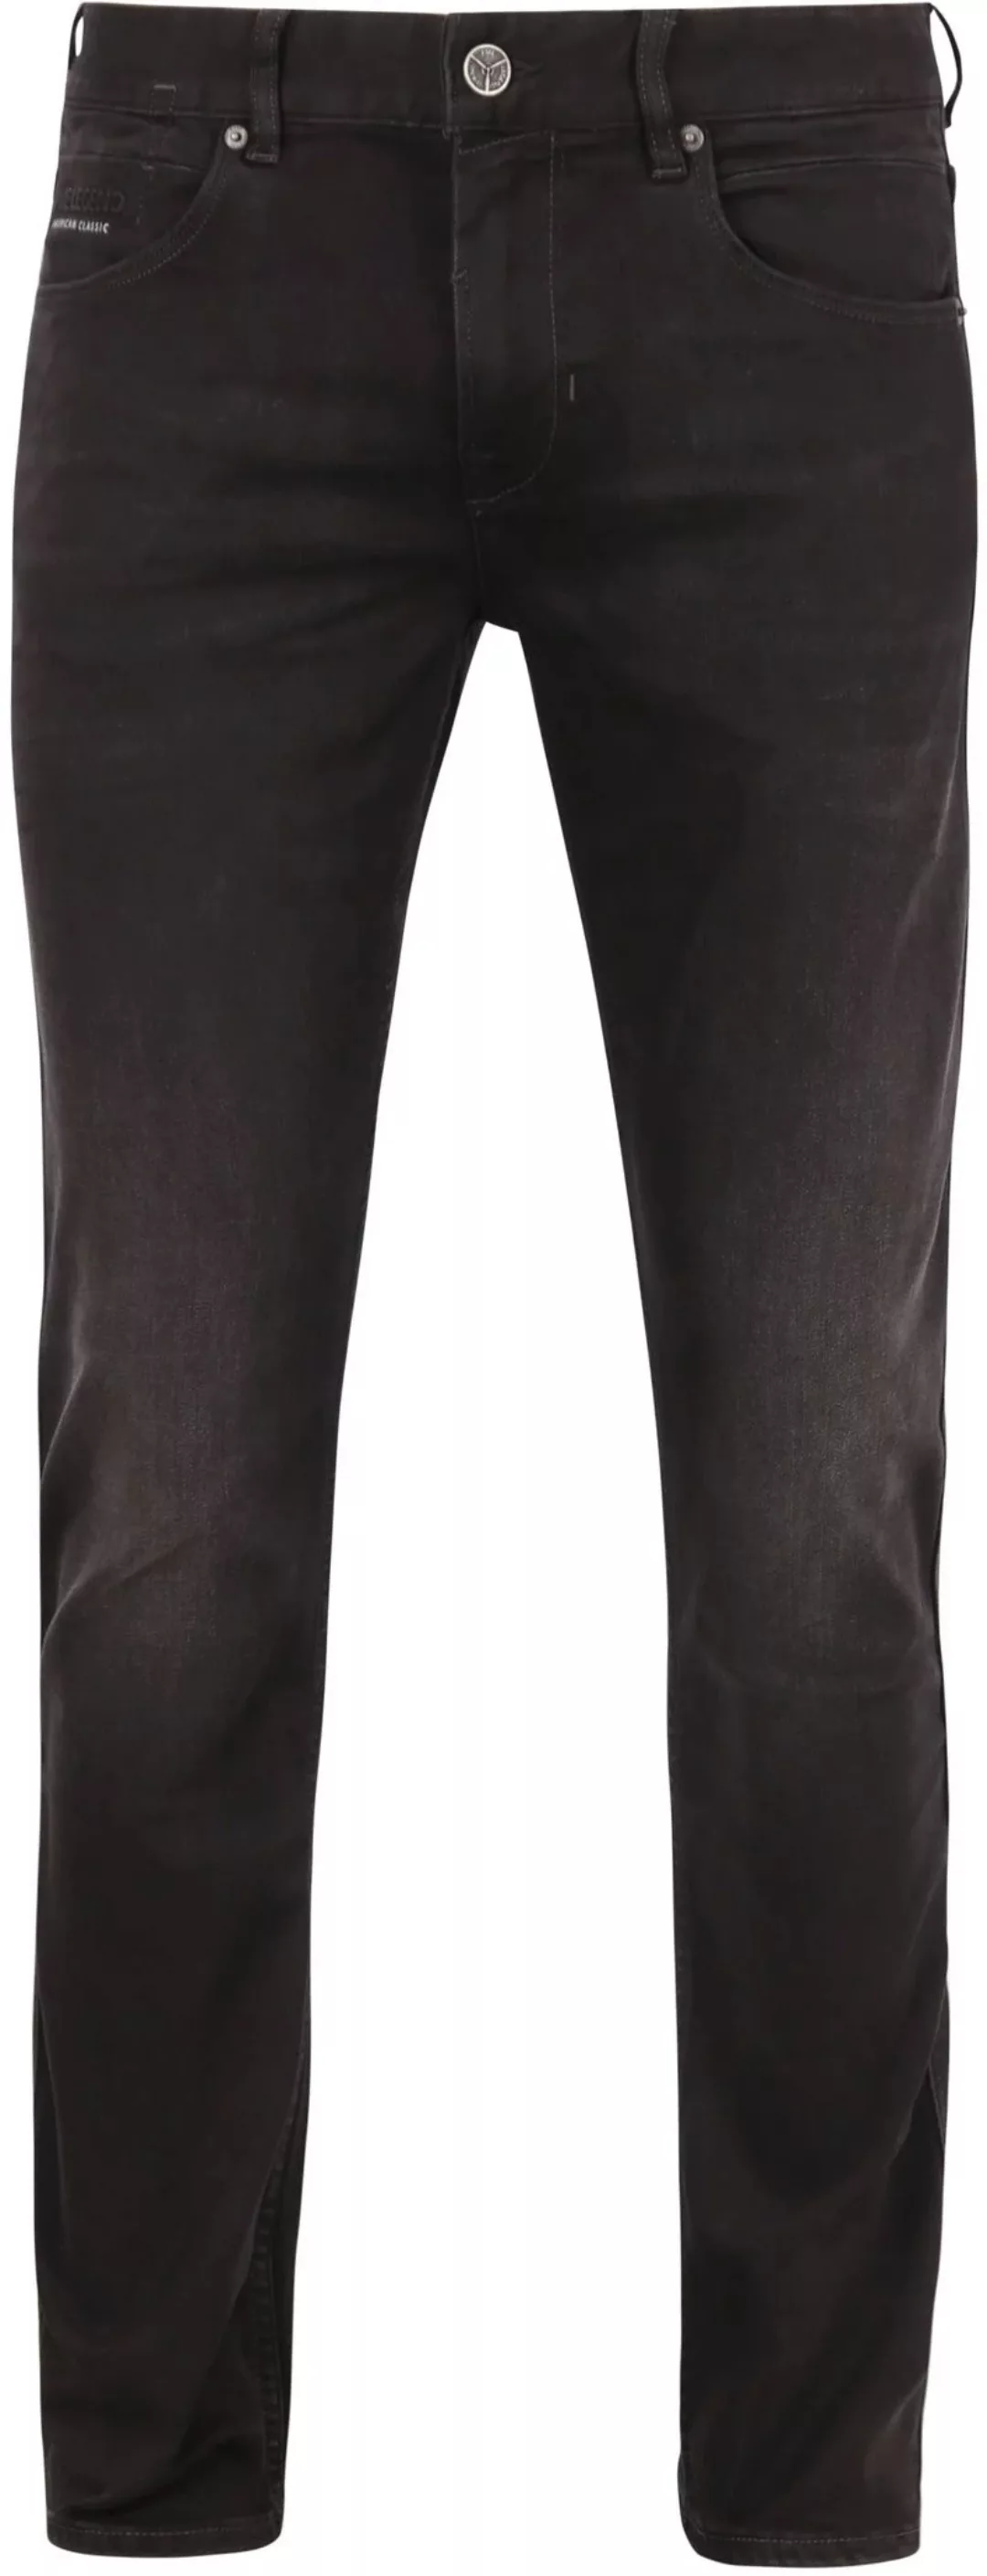 PME Legend Nightflight Jeans Schwarz RBD - Größe W 32 - L 36 günstig online kaufen